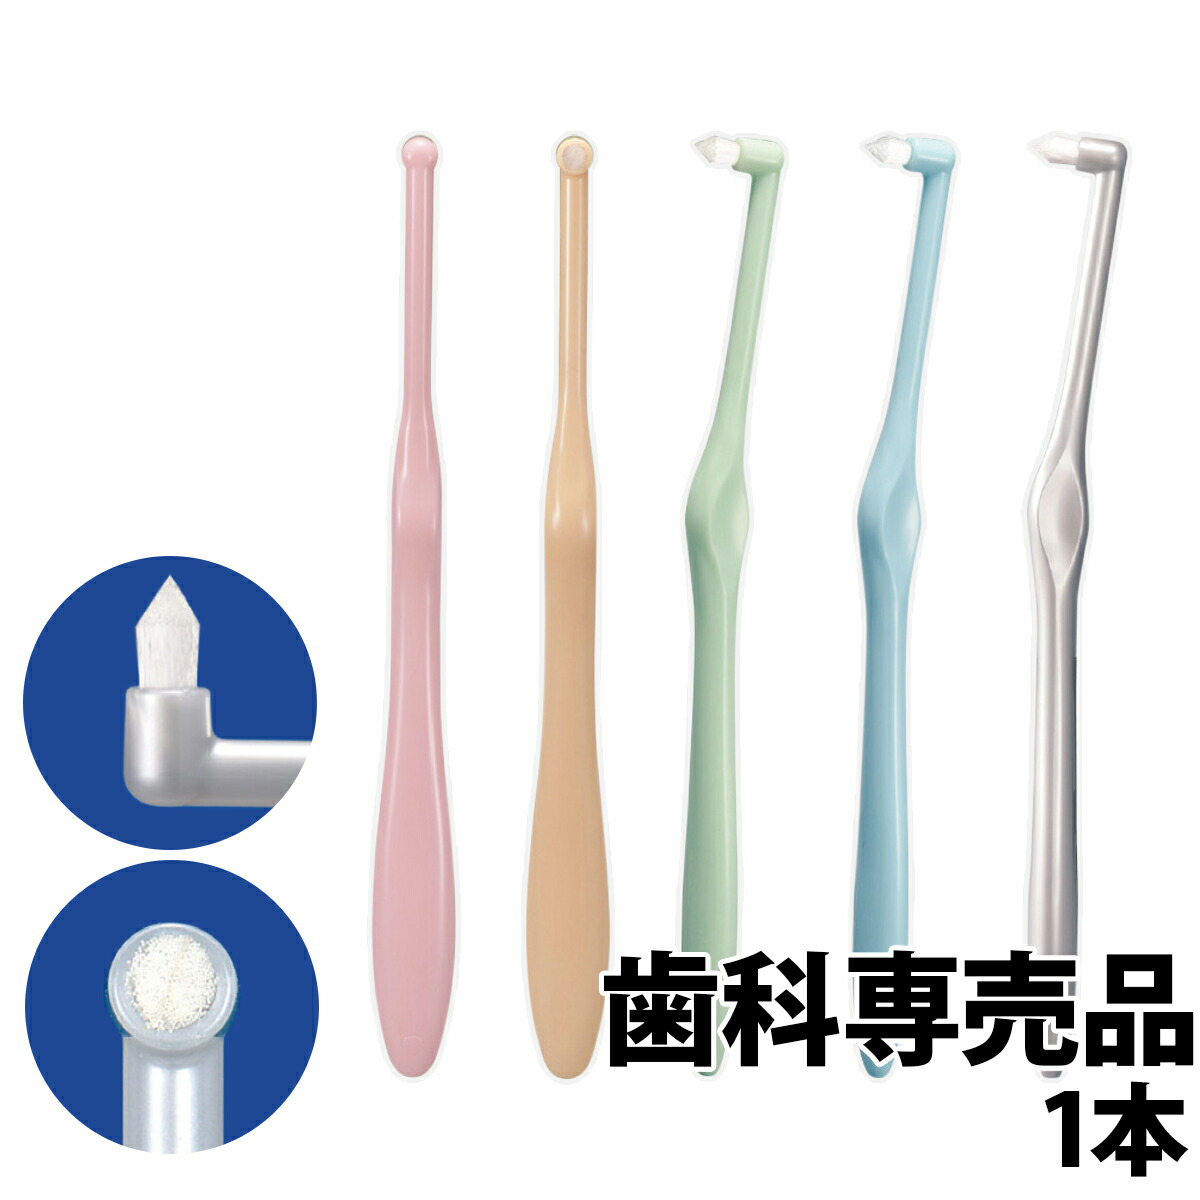 歯ブラシ 20本セット (4色×5本) キョーワの ツルピカ歯ブラシ 